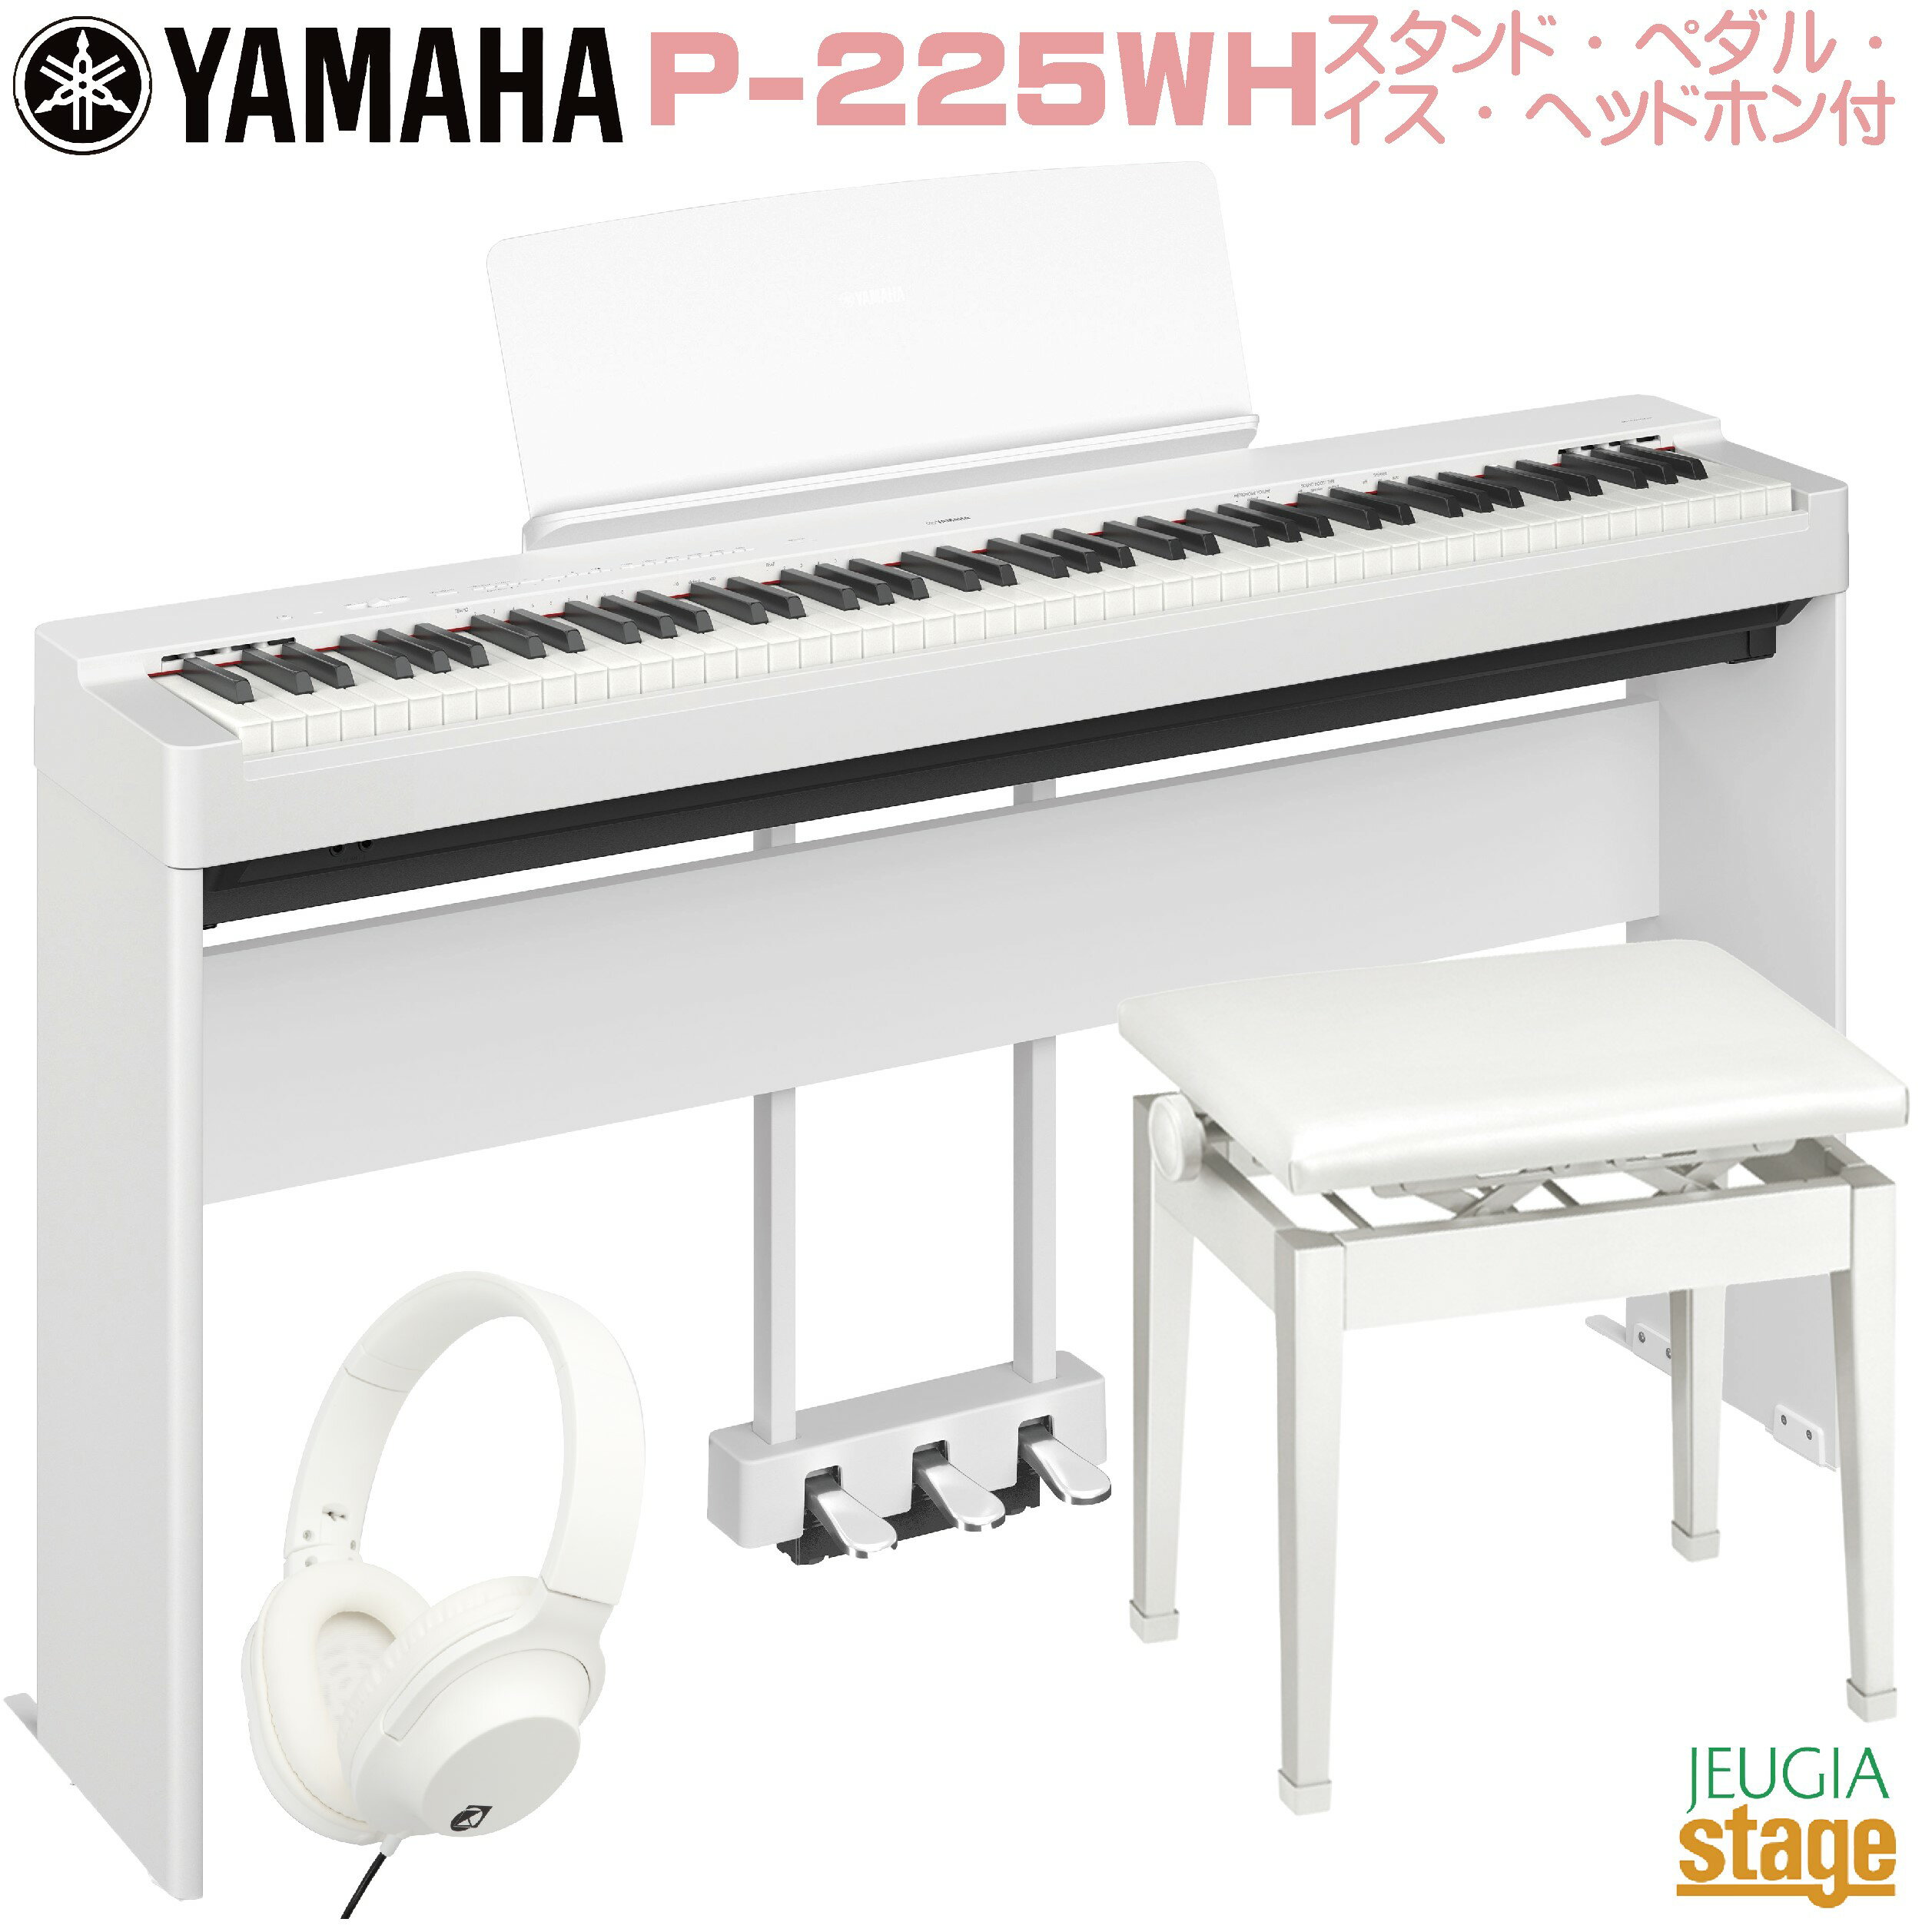 【新製品】YAMAHA P-225WH 【専用スタンドL-200WH(白) 専用ペダルユニットLP-1WH(白) 高低自在椅子(白) ヘッドホン(白)付き】ヤマハ 電子ピアノ Pシリーズ 88鍵 ホワイト 【Stage-Rakuten Piano SET】P-125後継機種 やまは